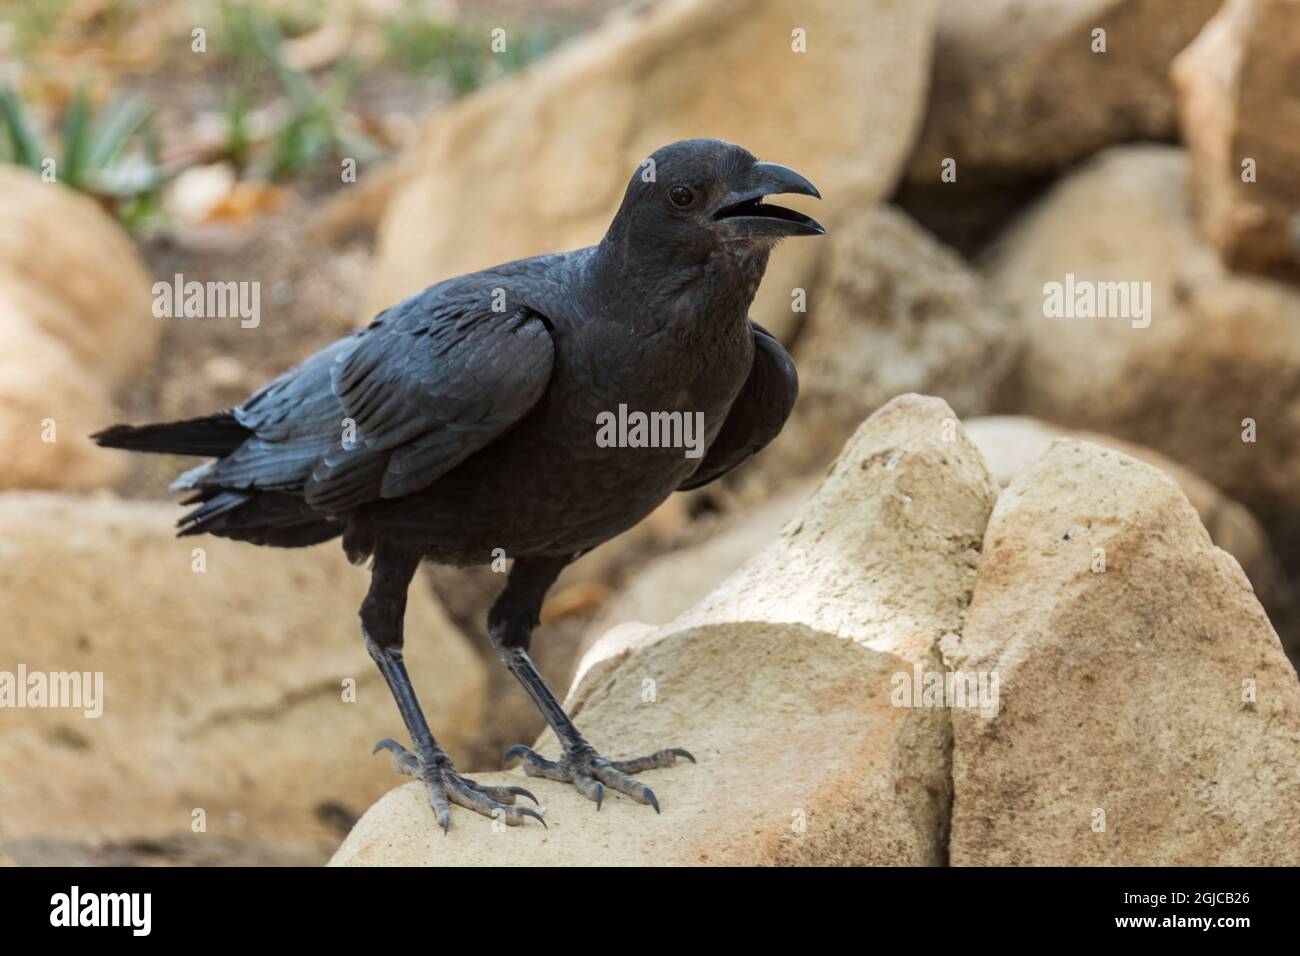 Raven de cola de abanico - Corvus rhipidurus, ave paseriforme negra grande de bosques y bosques del Cuerno de África, Etiopía. Foto de stock